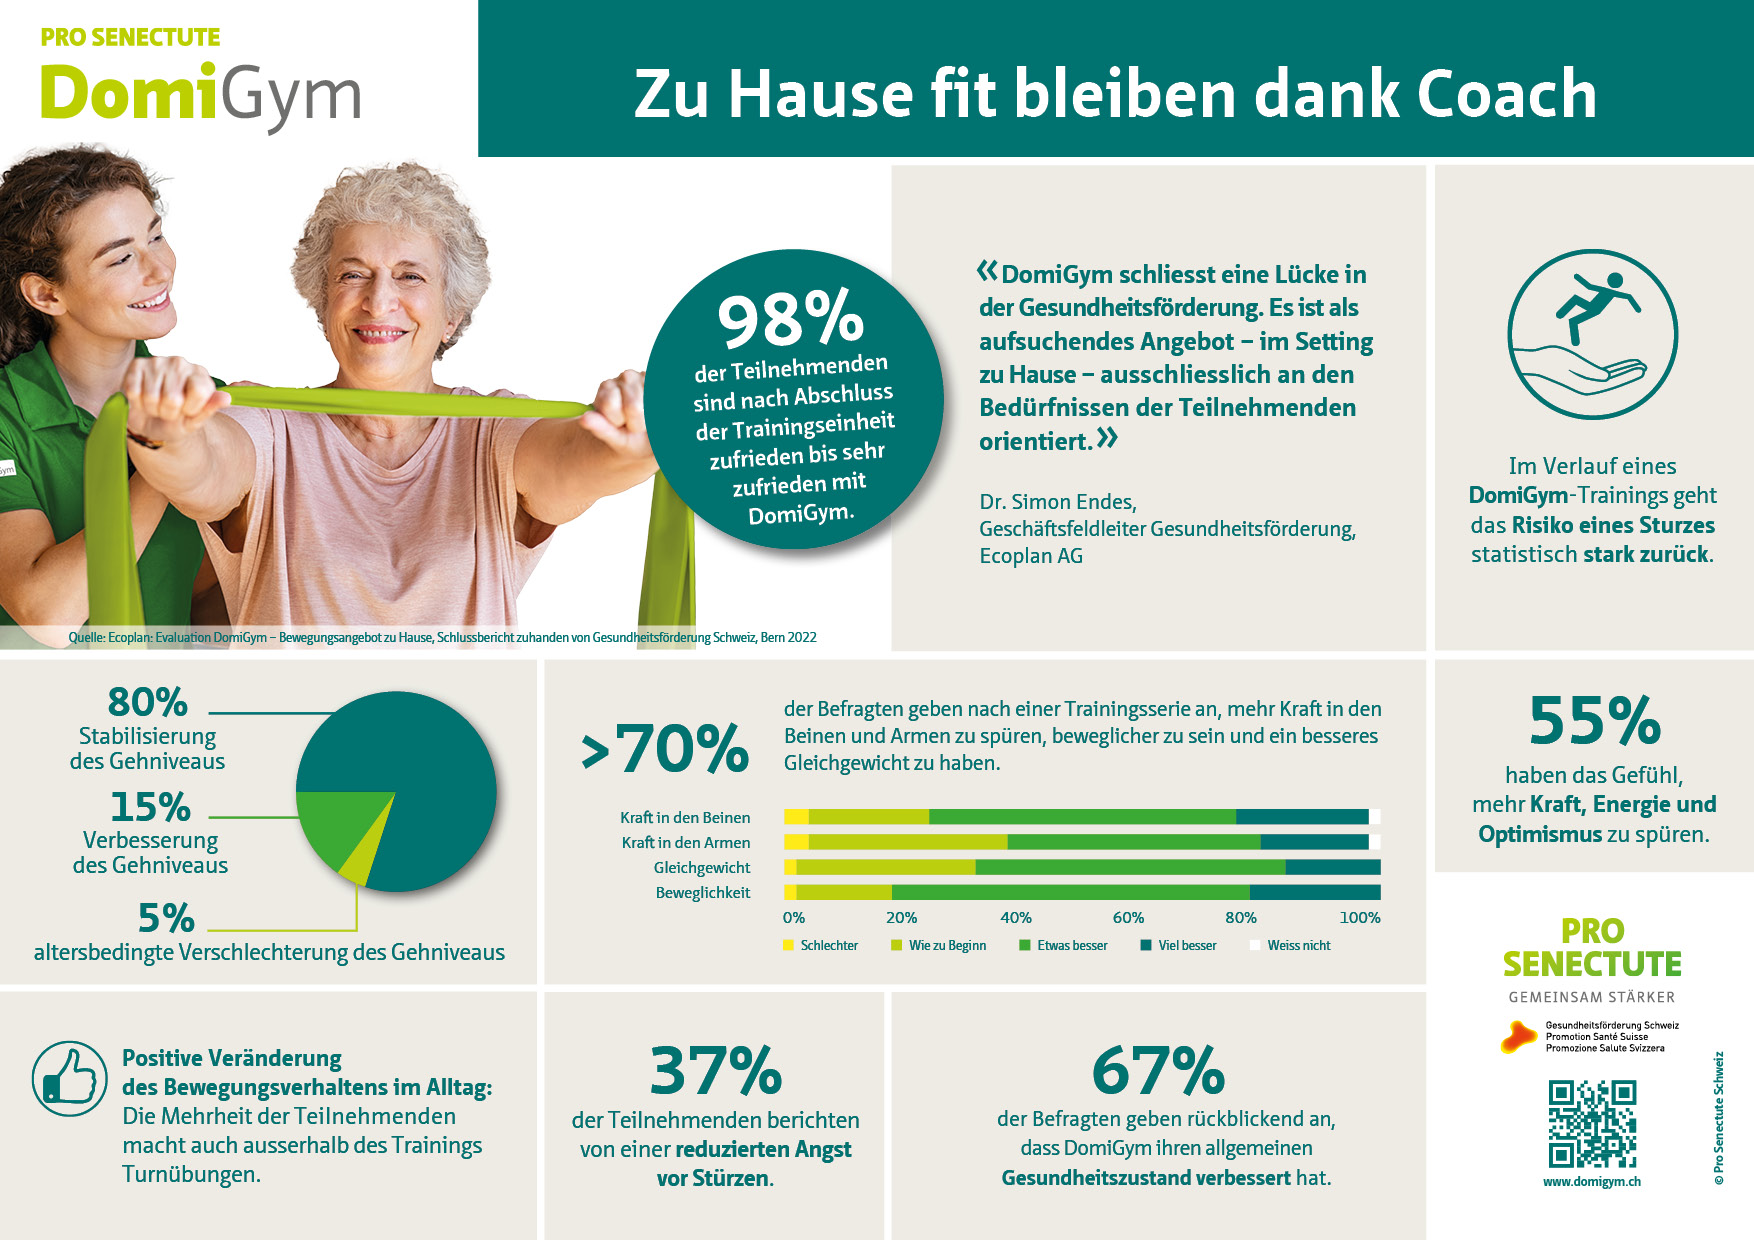 Zusammenfassung der Evaluation von DomiGym im Auftrag von Gesundheitsförderung Schweiz